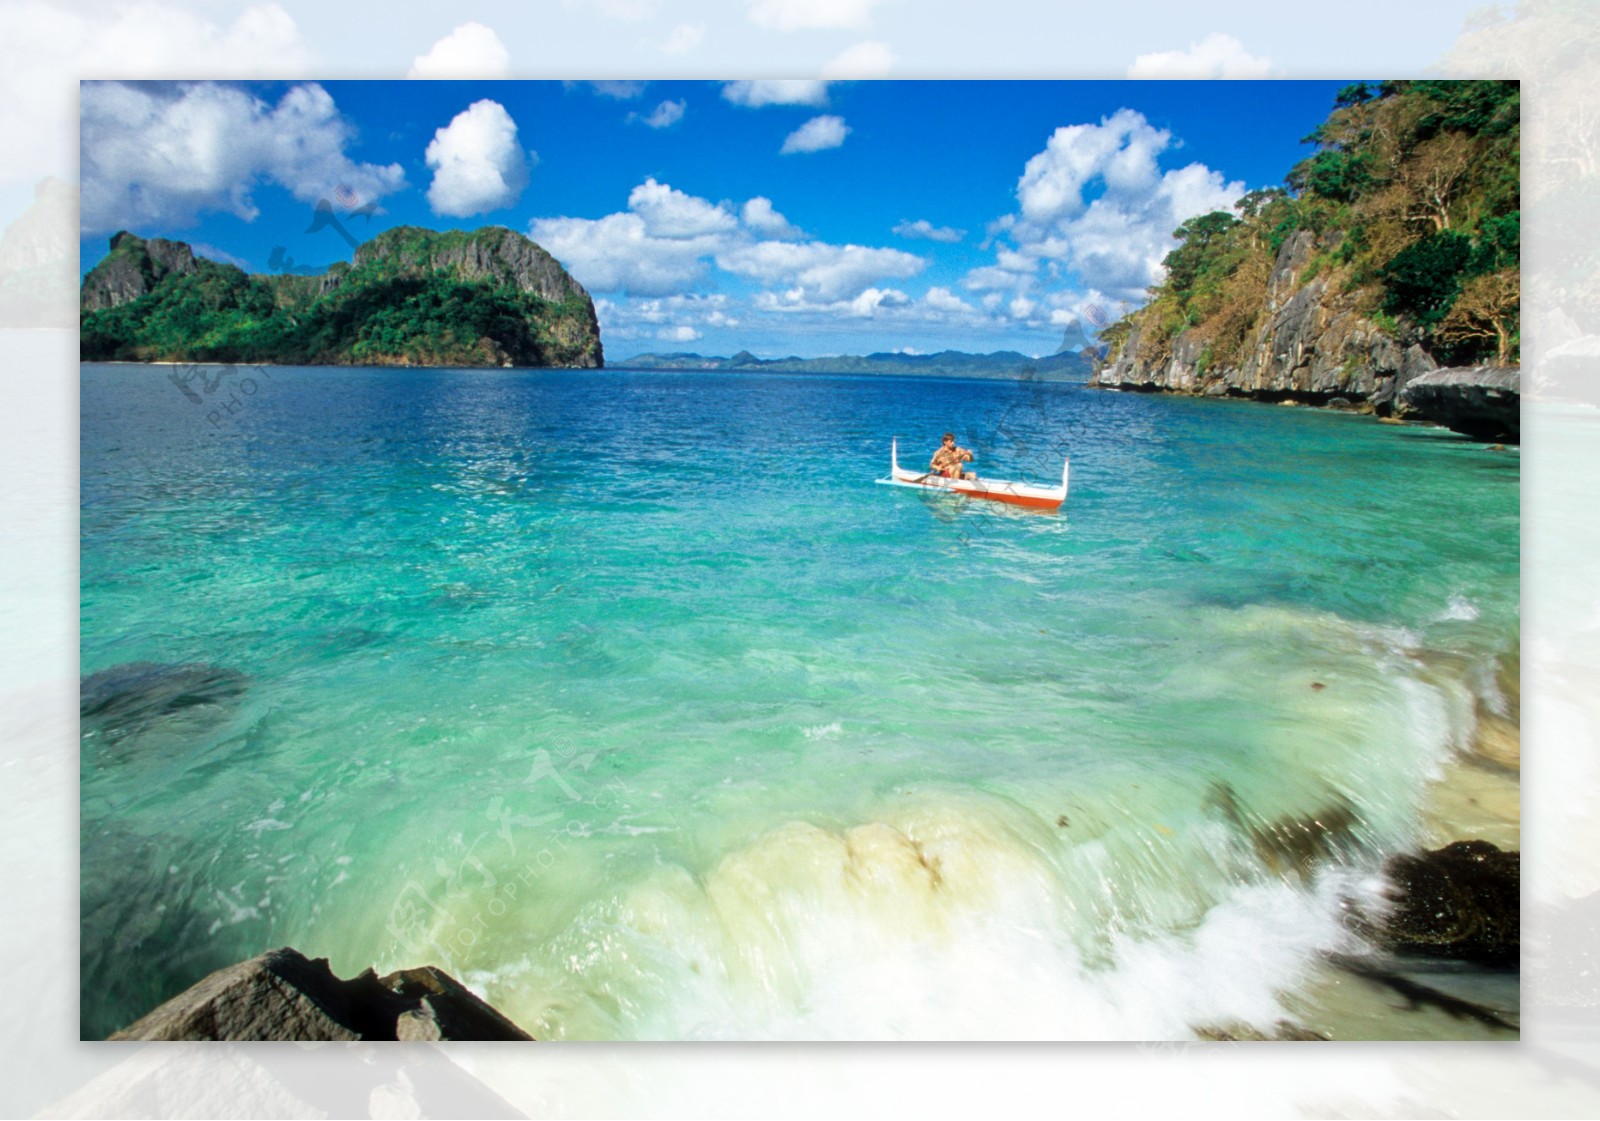 菲律宾萨马岛旅游度假风景图片